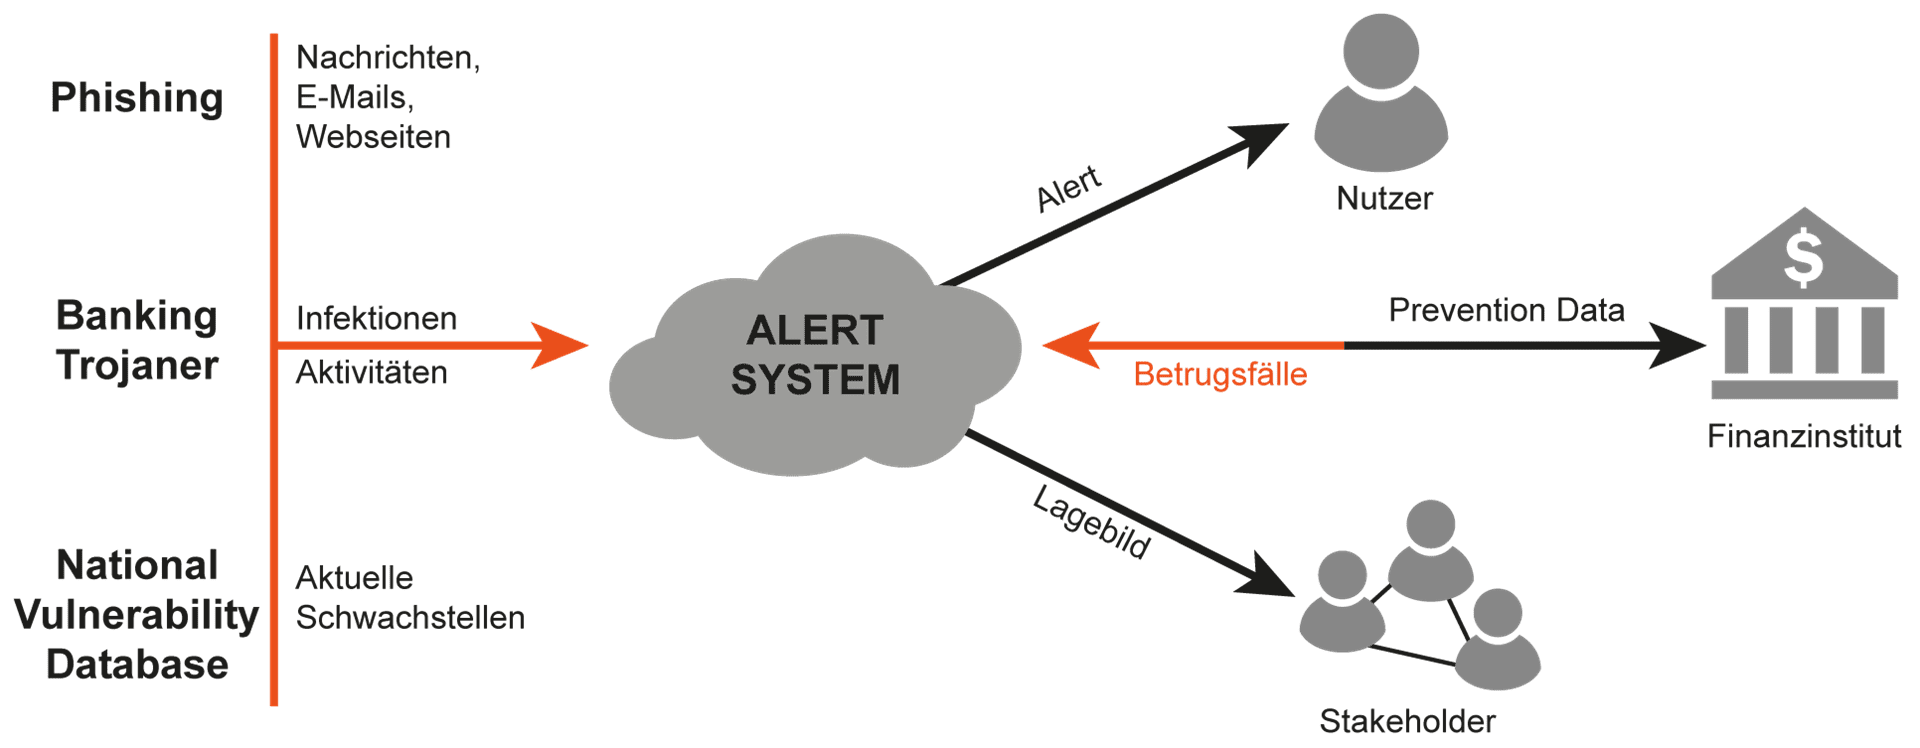 Maschinelles Lernen als Anwendungsszenarios eines Alert-Systems für Online-Banking